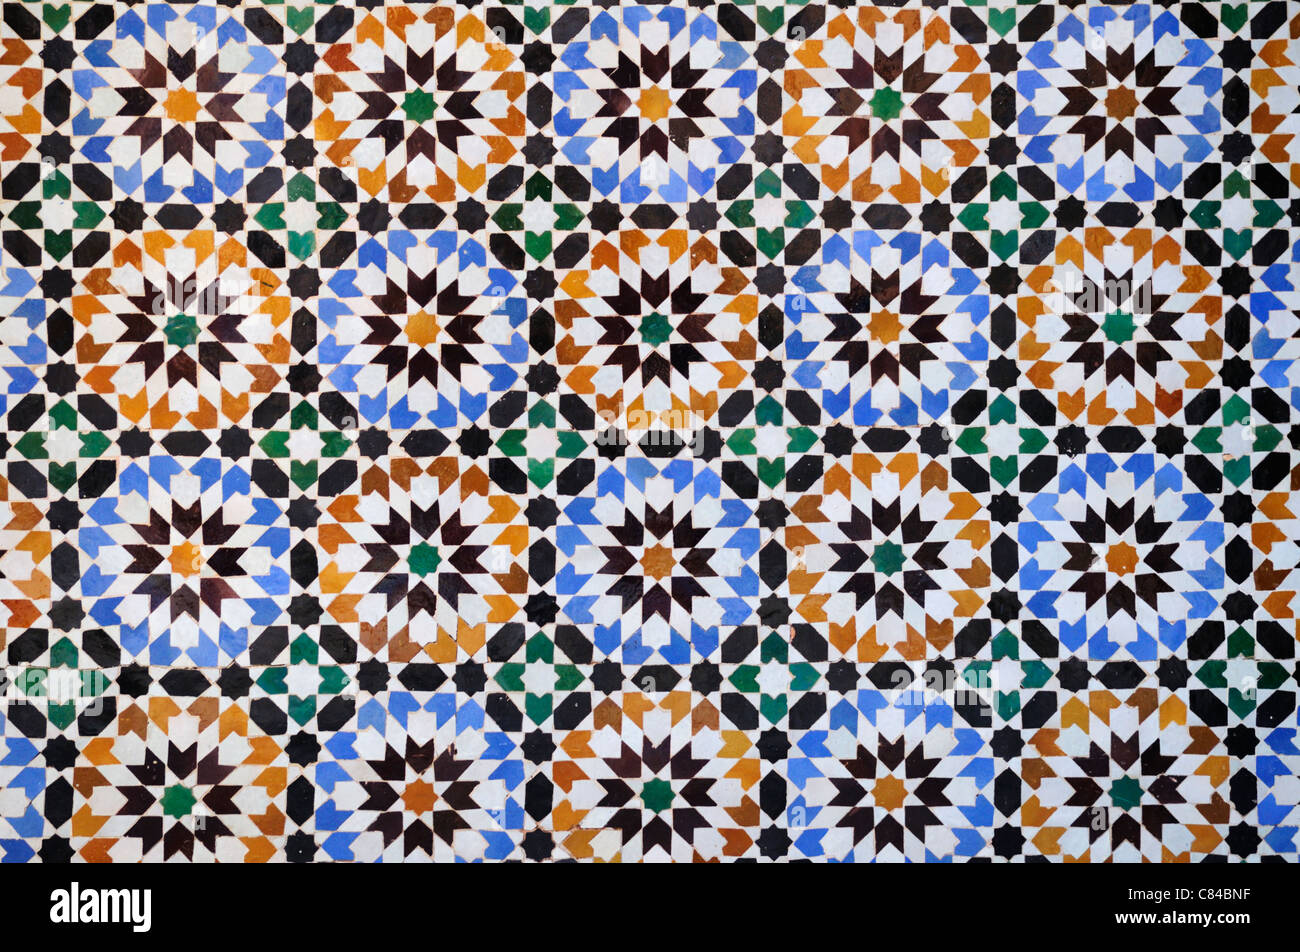 Zellij Tiles at The Ali Ben Youssef Medersa, Marrakech, Morocco Stock Photo